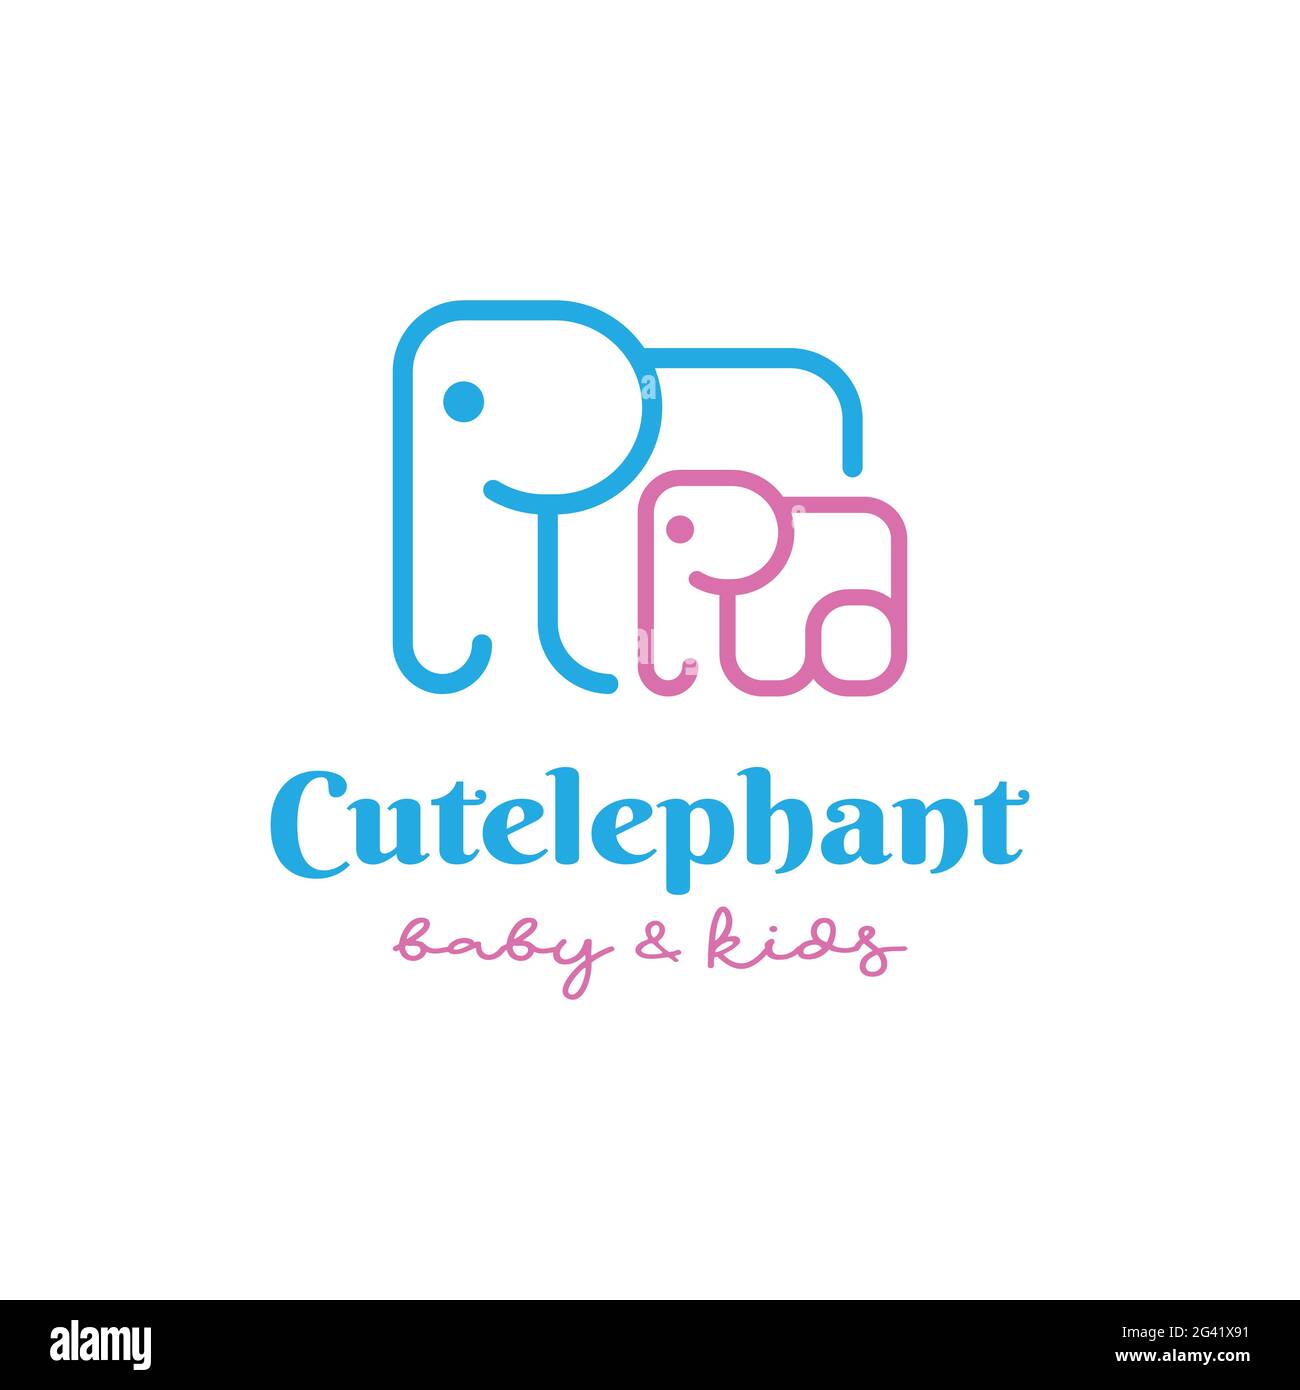 Cute Fun Happy adorabile Baby Kids piccolo bambino Elephant piccolo con la mamma linea semplice Logo Design per il negozio di bambini e bambini Illustrazione Vettoriale